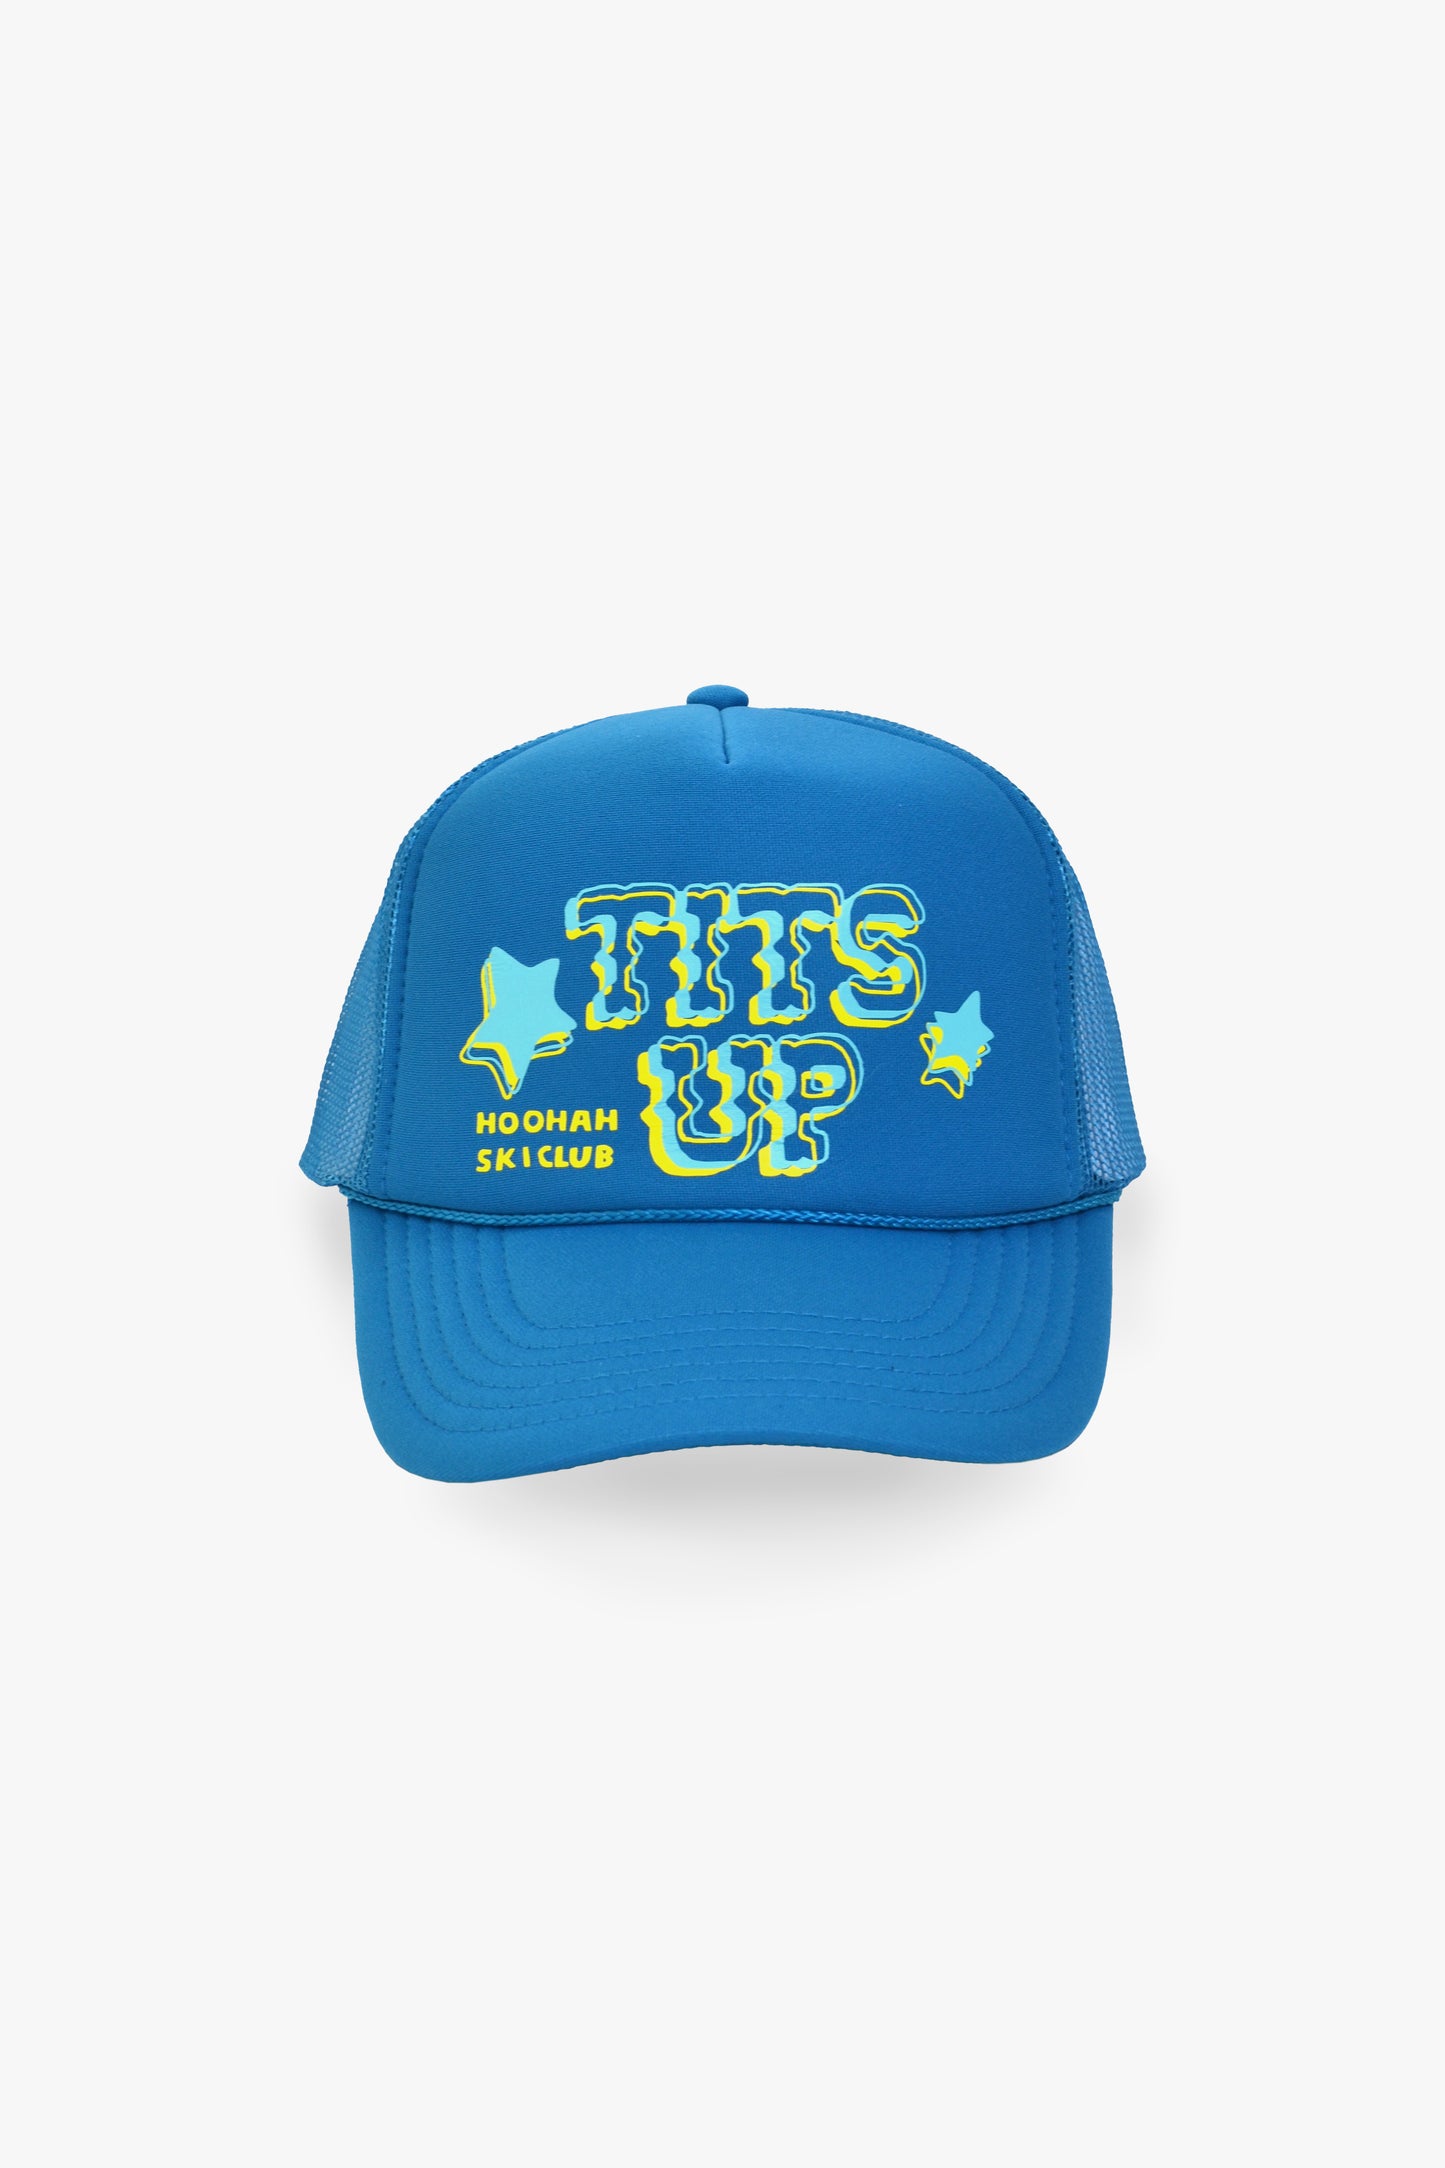 Tits Up Trucker Hat